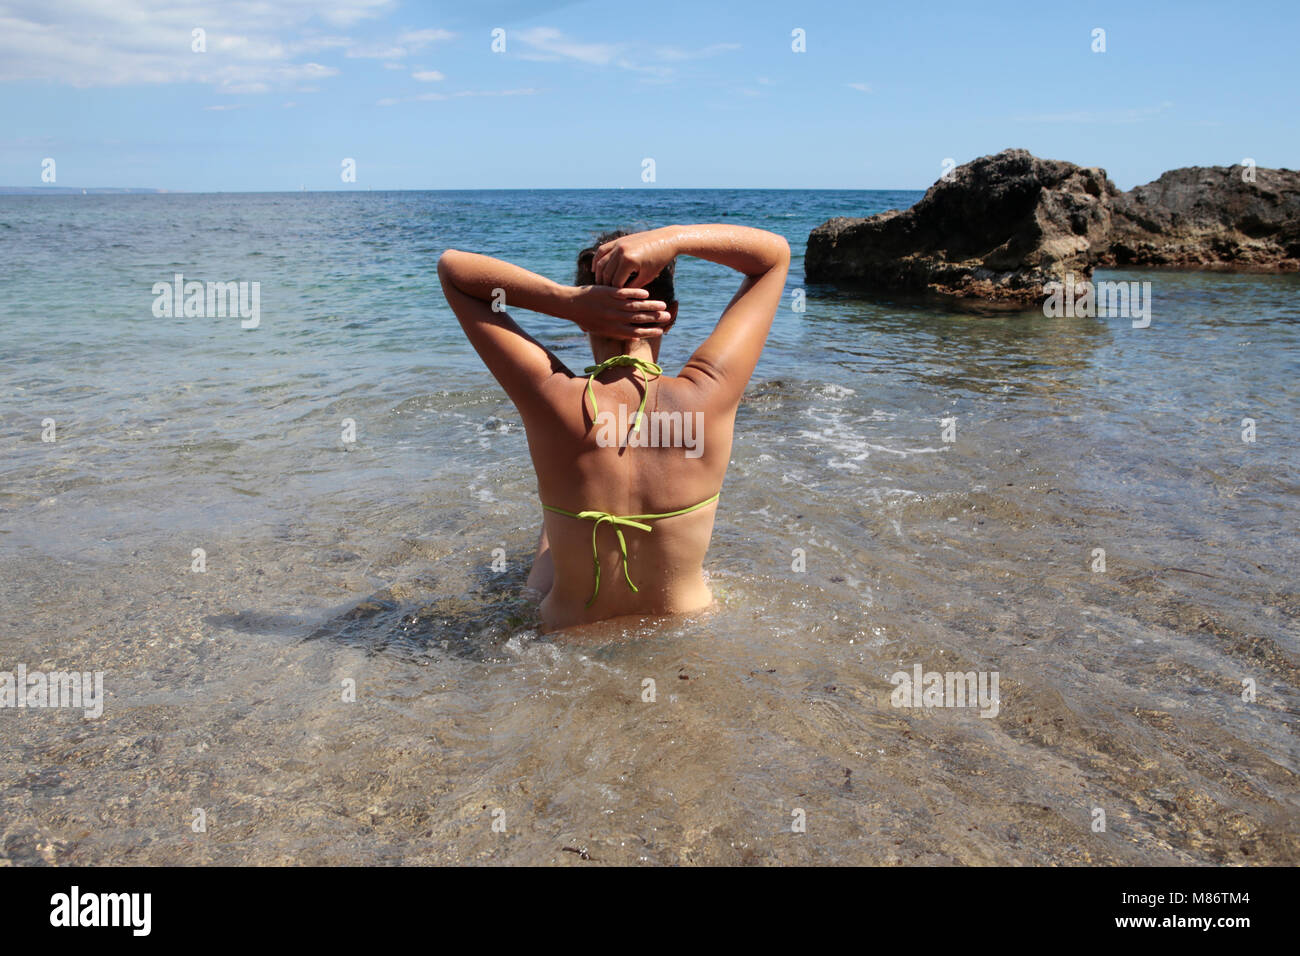 Frau, die im Meer steht und ihr Haar hält, Punta Negra, Mallorca, Spanien Stockfoto